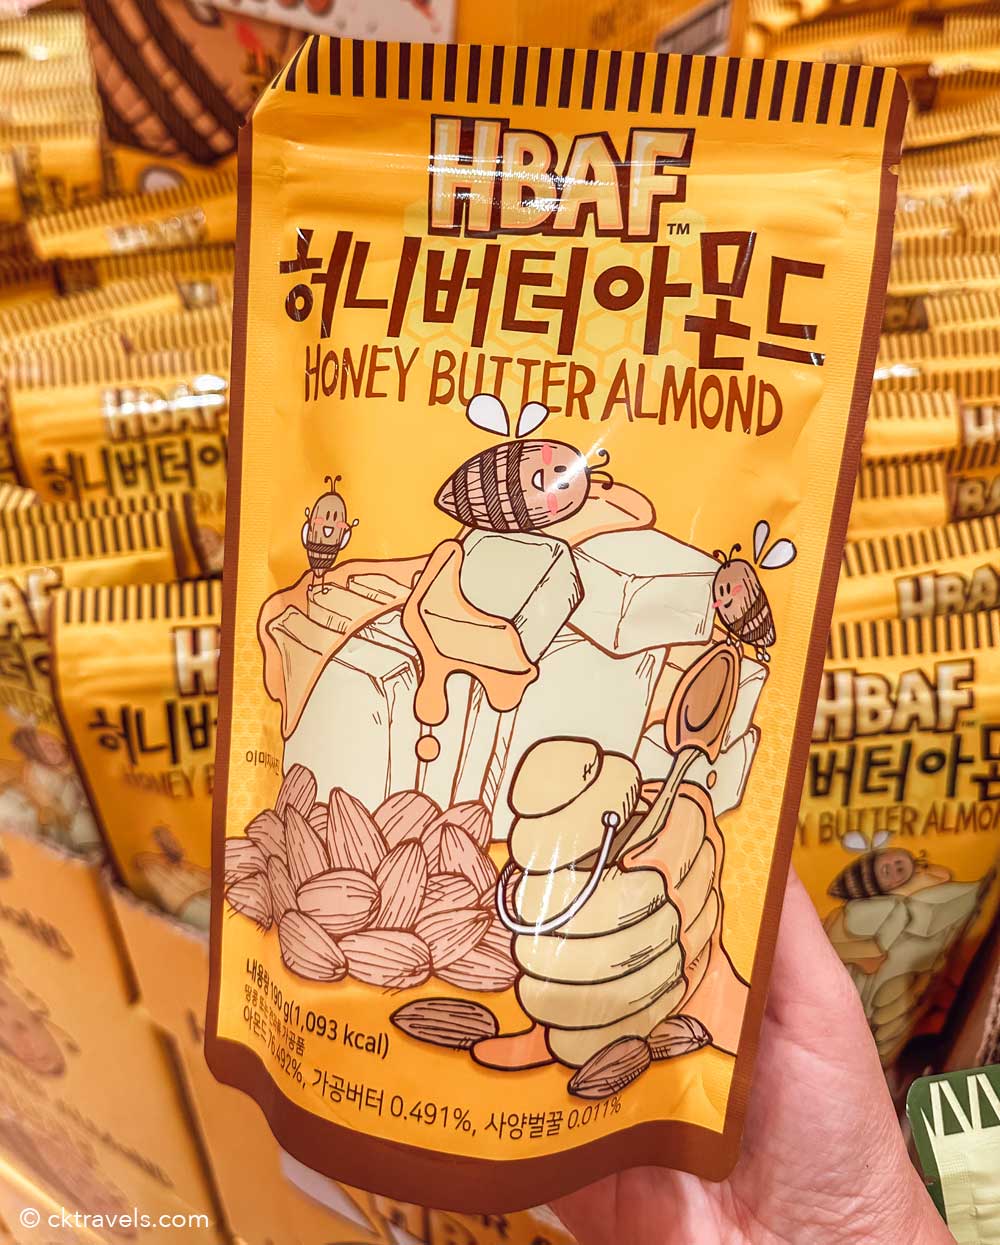 HBAF honey butter Almonds south korea